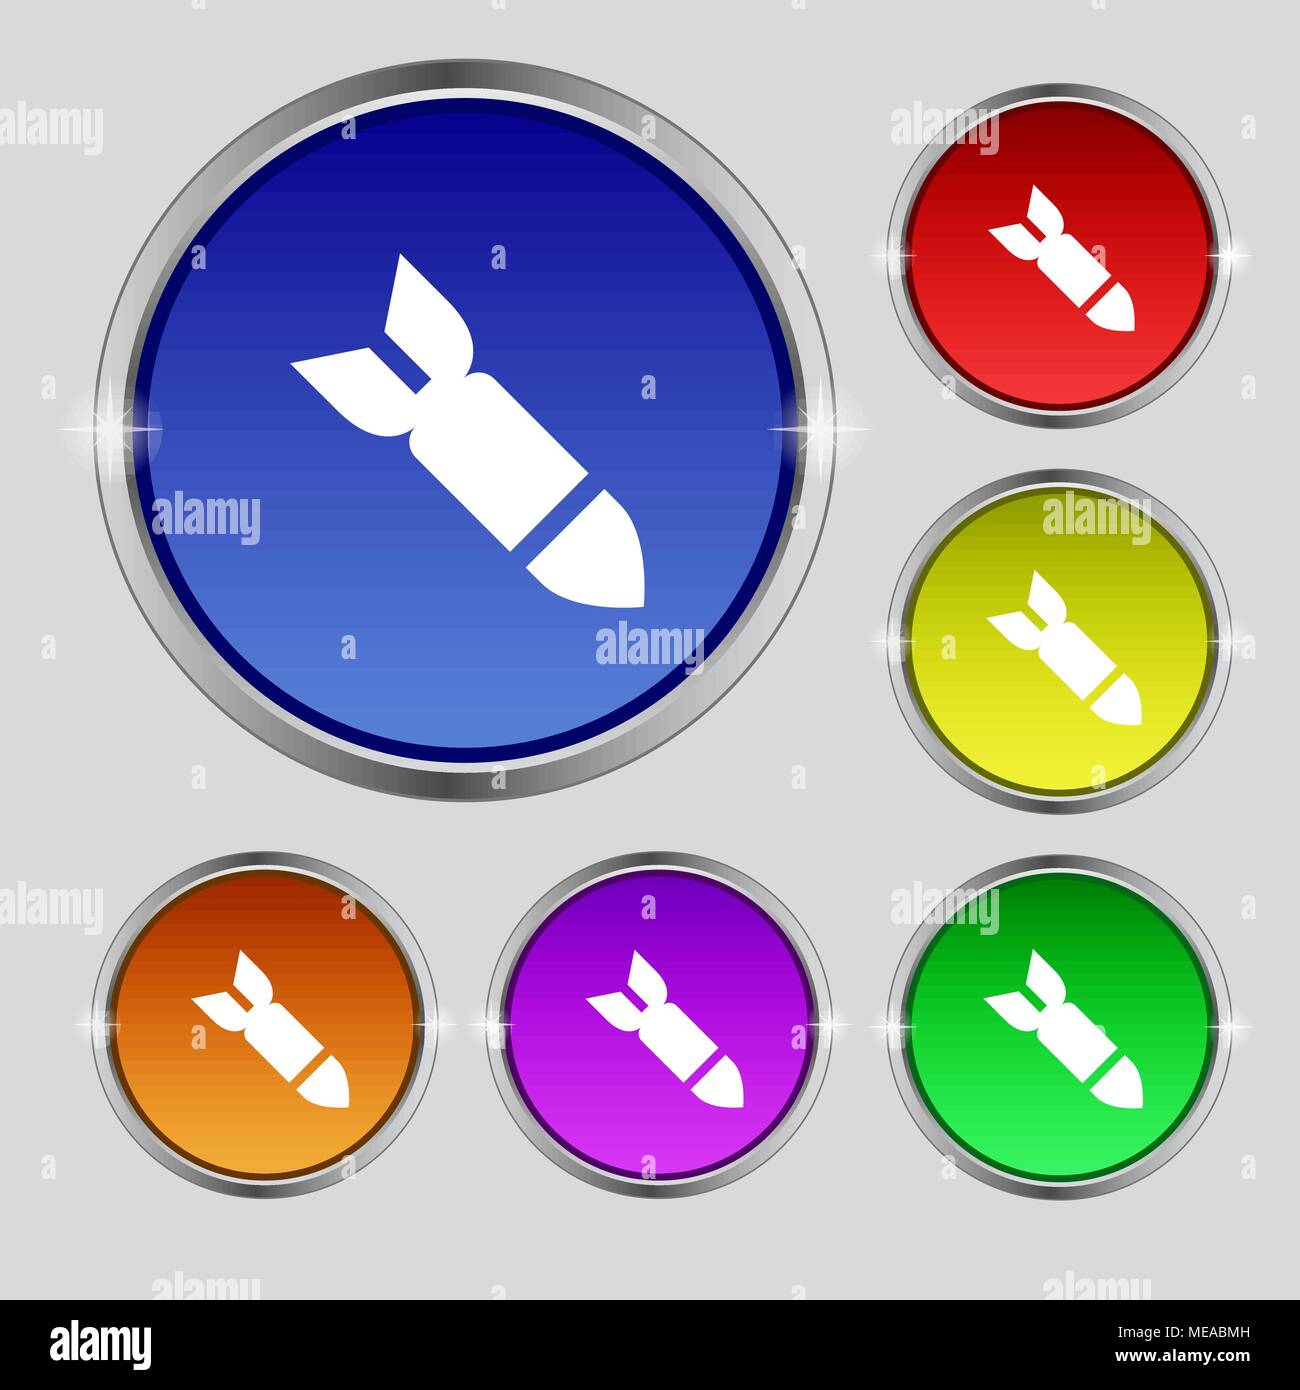 Rakete Rakete Waffensymbol unterzeichnen. Runde Symbol auf hellen farbigen Buttons. Vector Illustration Stock Vektor